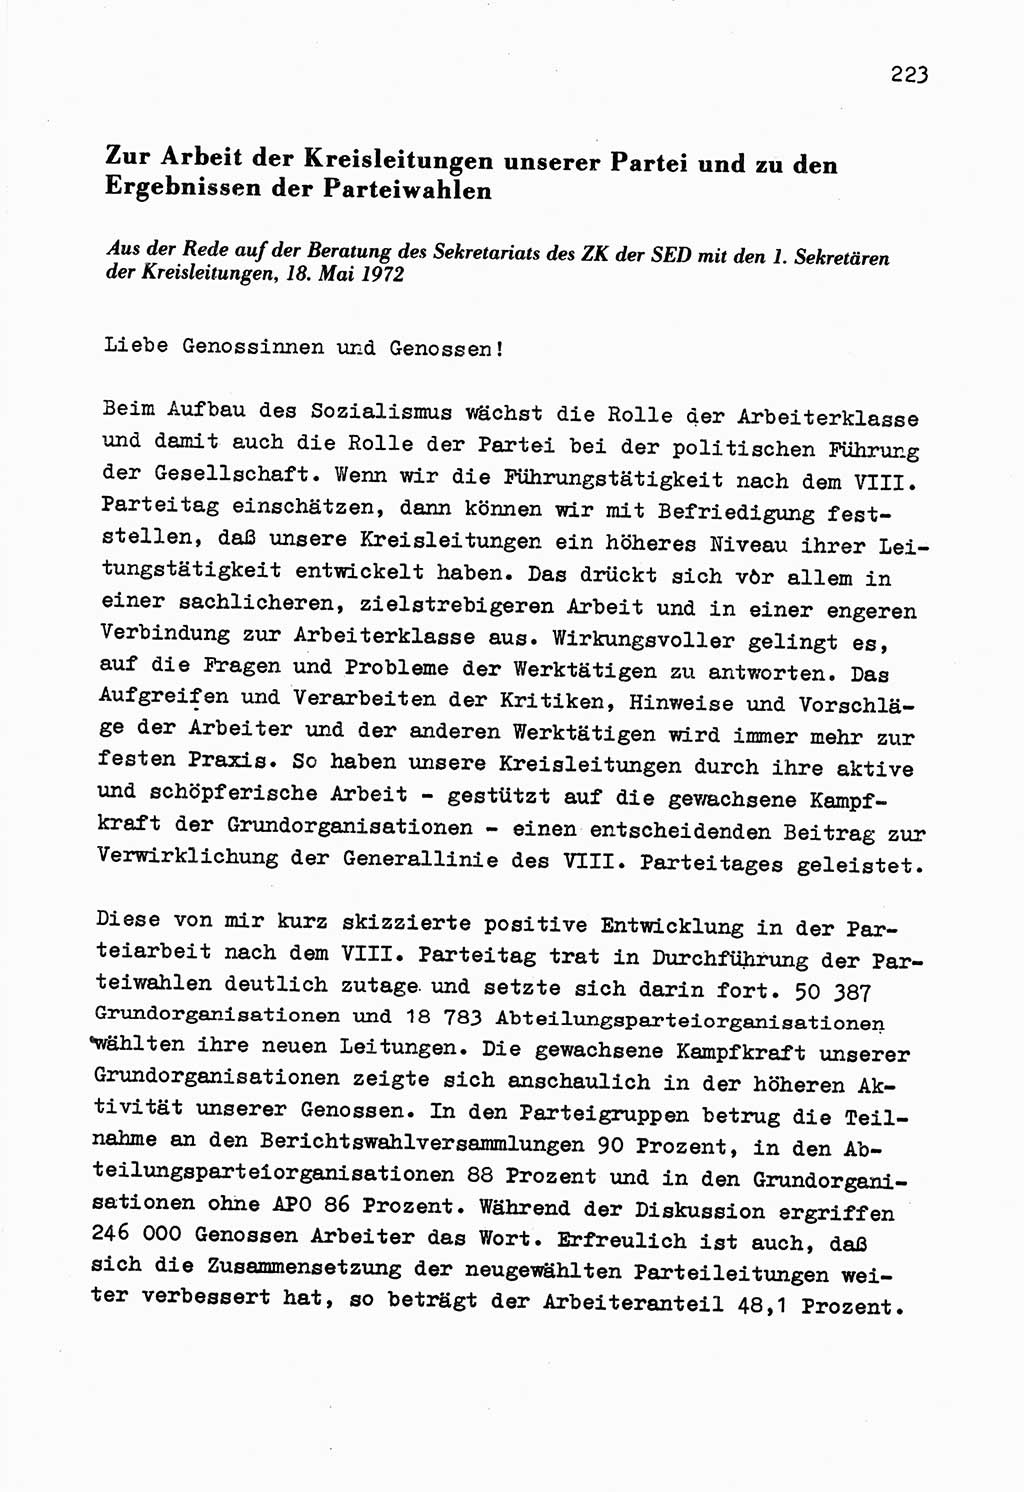 Zu Fragen der Parteiarbeit [Sozialistische Einheitspartei Deutschlands (SED) Deutsche Demokratische Republik (DDR)] 1979, Seite 223 (Fr. PA SED DDR 1979, S. 223)